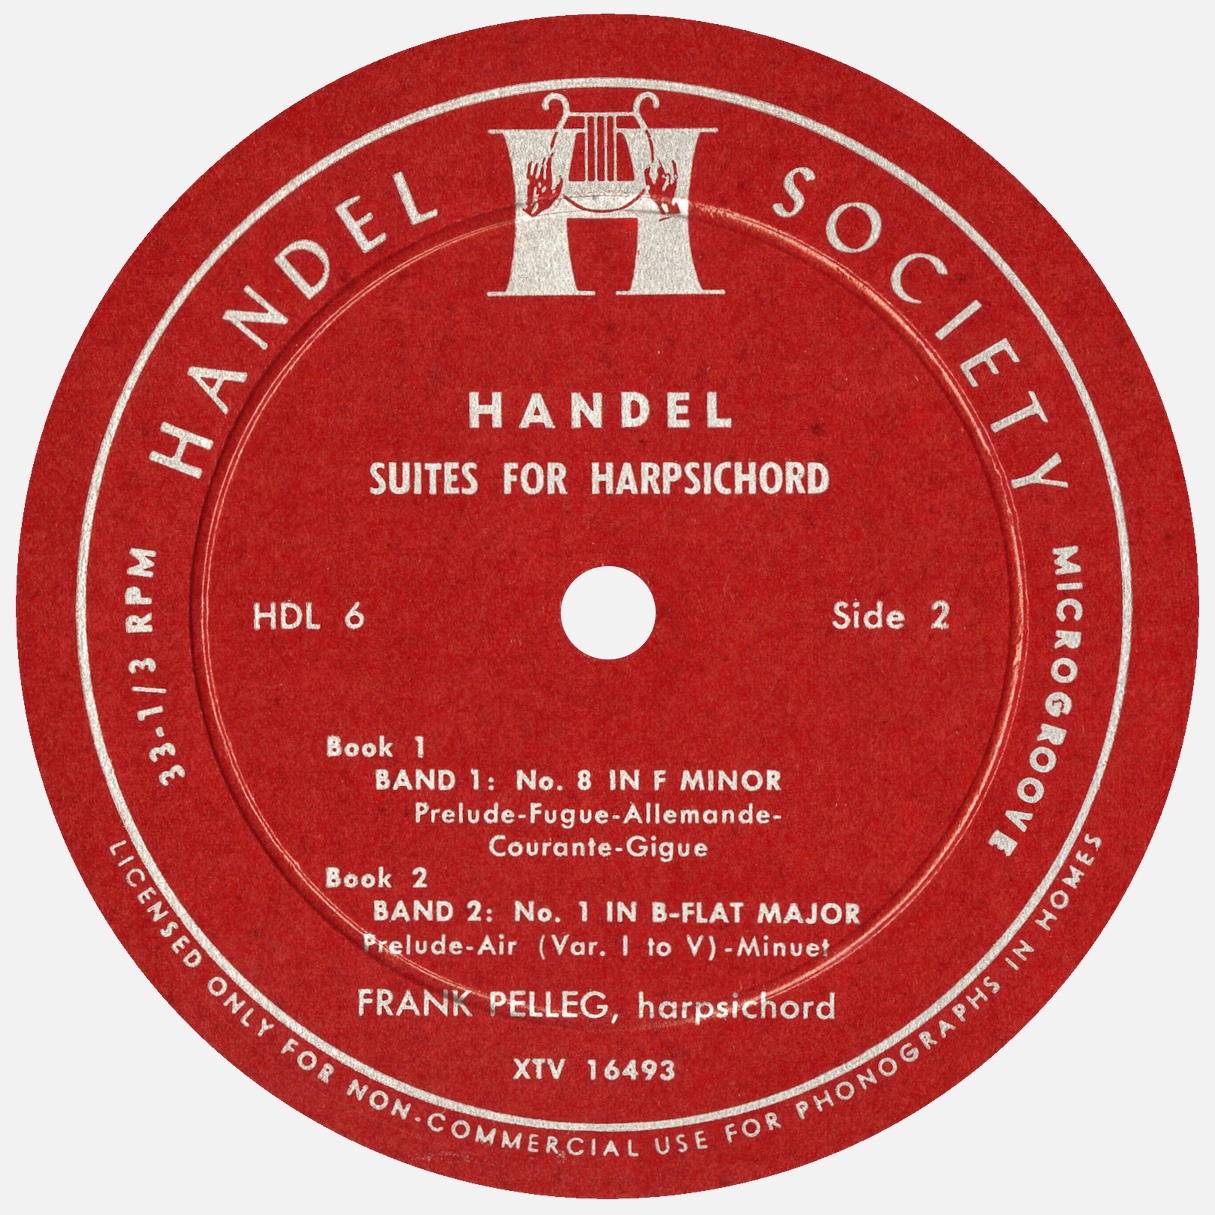 Étiquette verso du disque Handel Society HDL 6